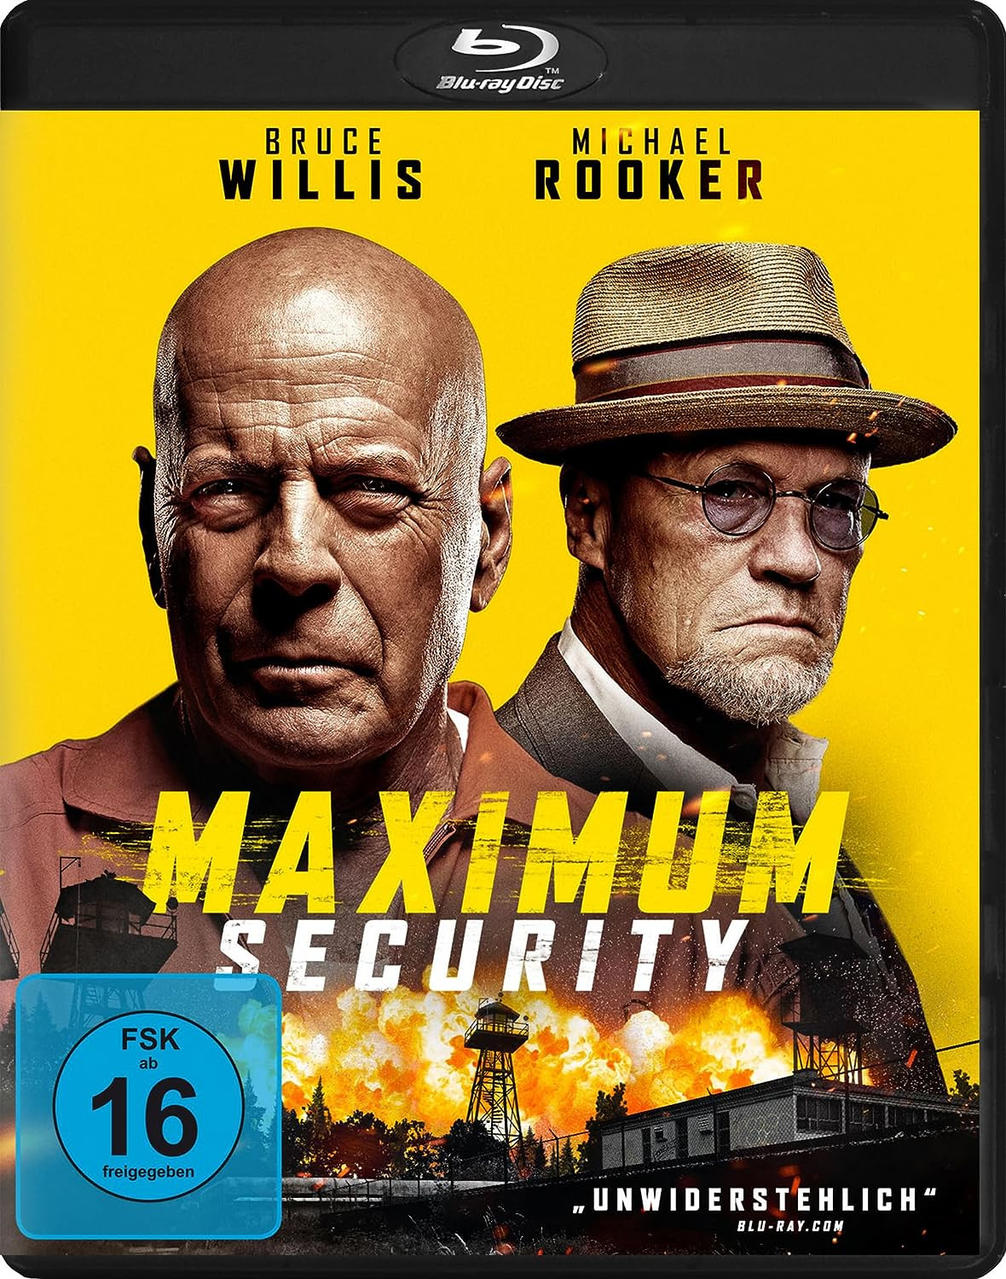 Maximum Security Blu-ray